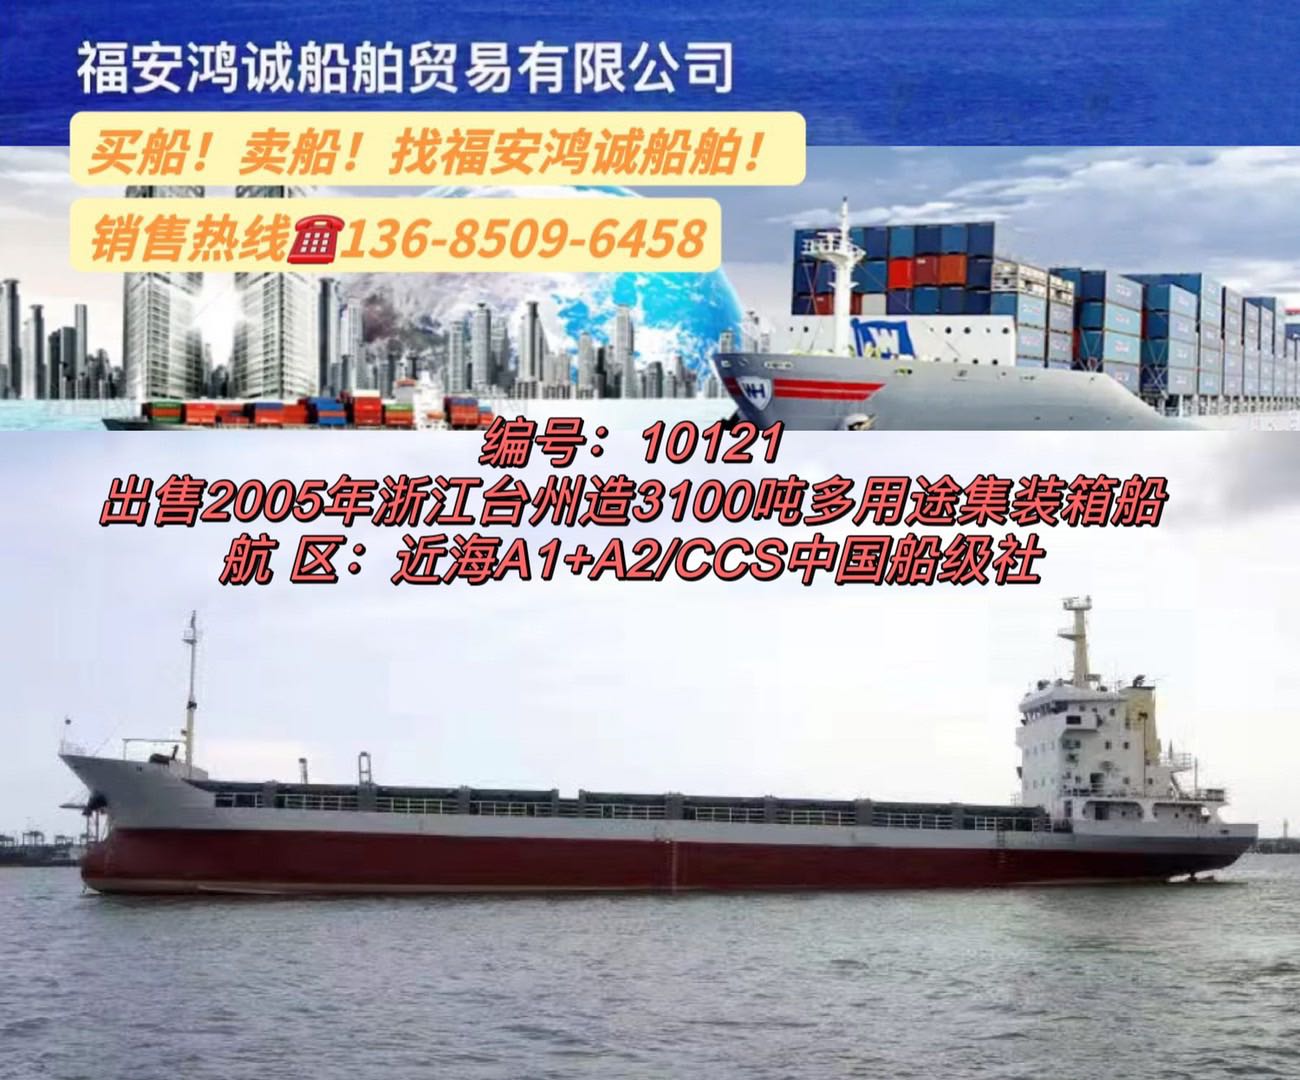 低价出售多艘3300多吨在航货船